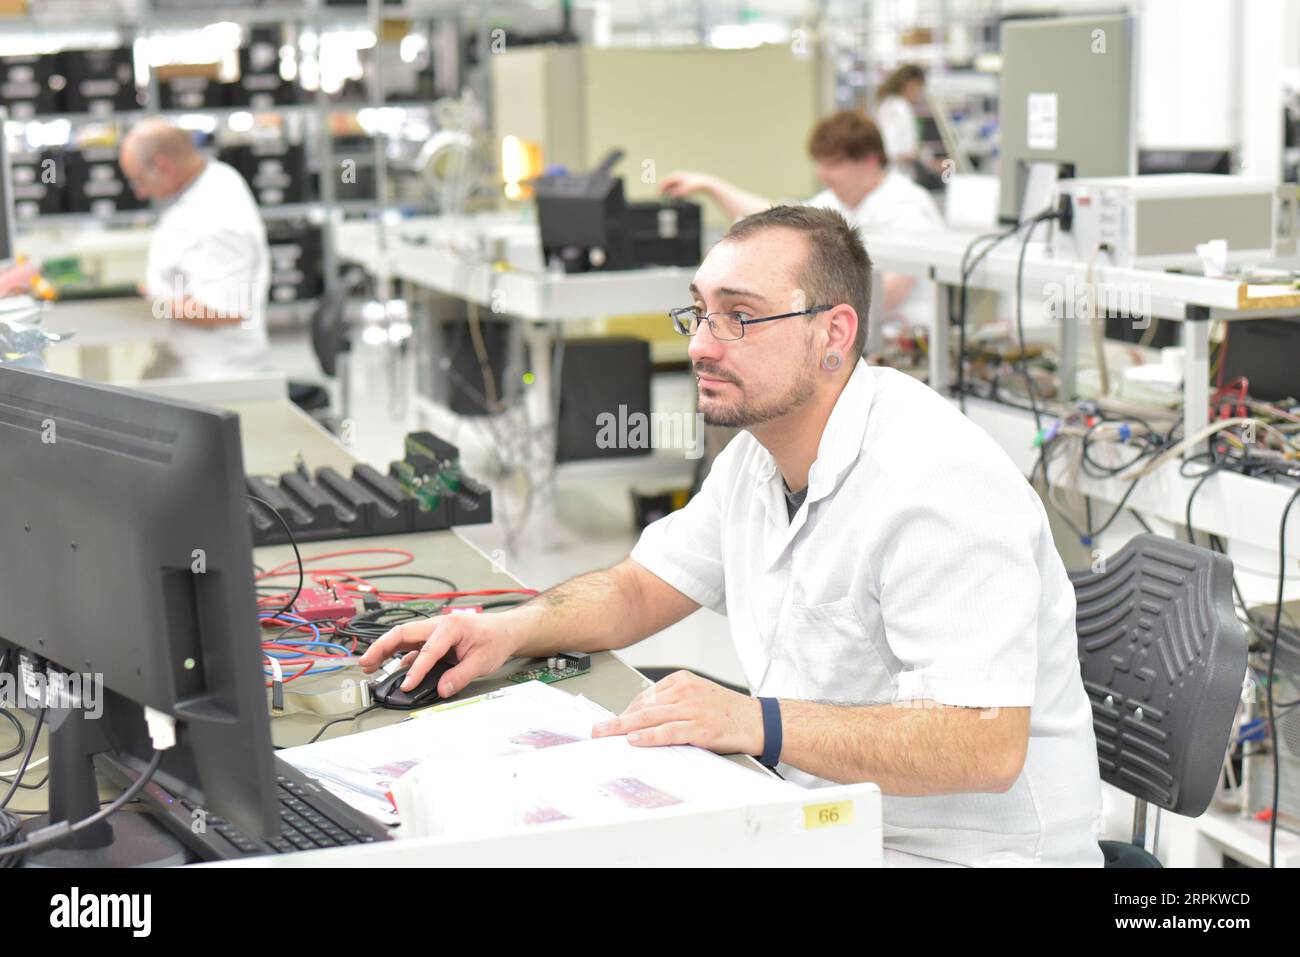 In ingegneria microelettronica: i lavoratori nella produzione e assemblaggio di electronic high tech componenti in un moderno stabilimento Foto Stock